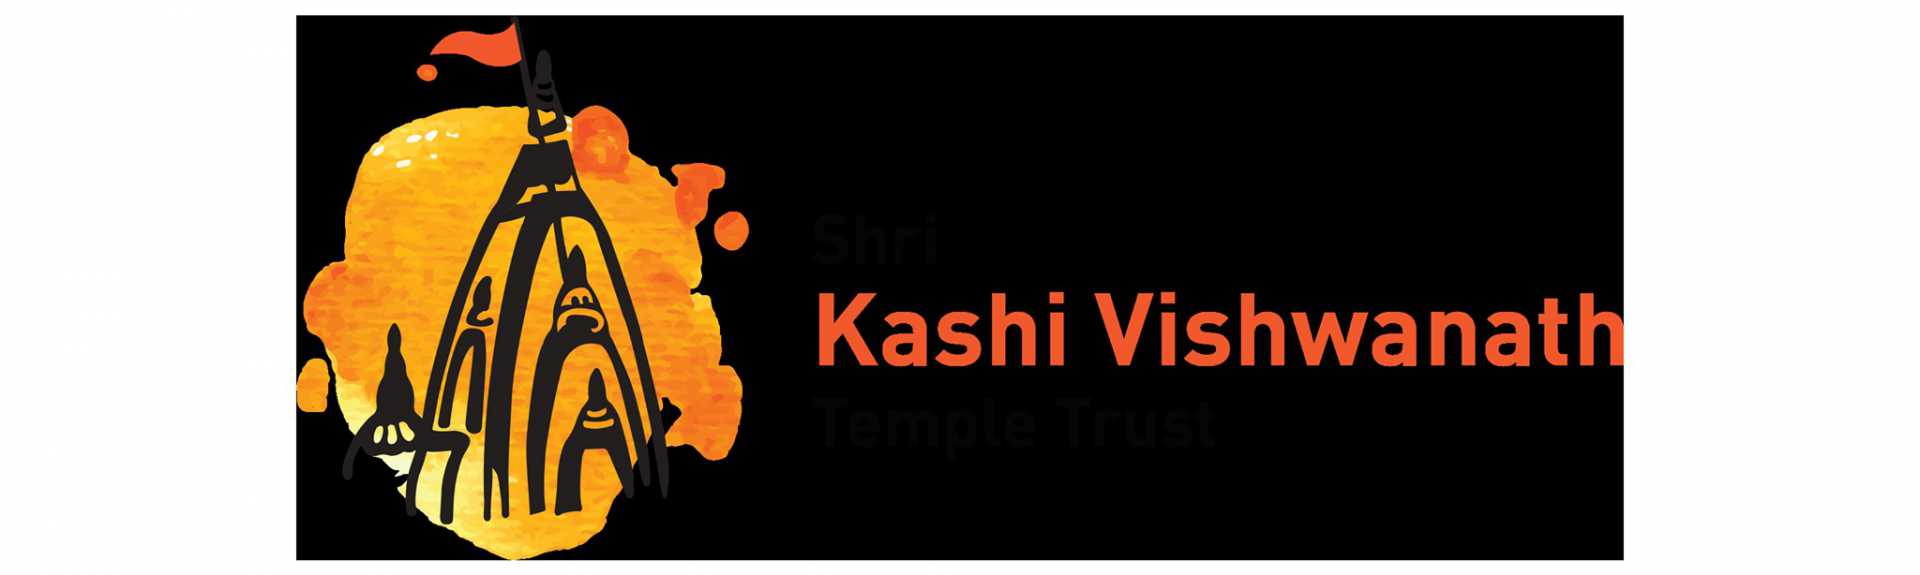 Shri Kashi Vishwanath Virtual Darshan